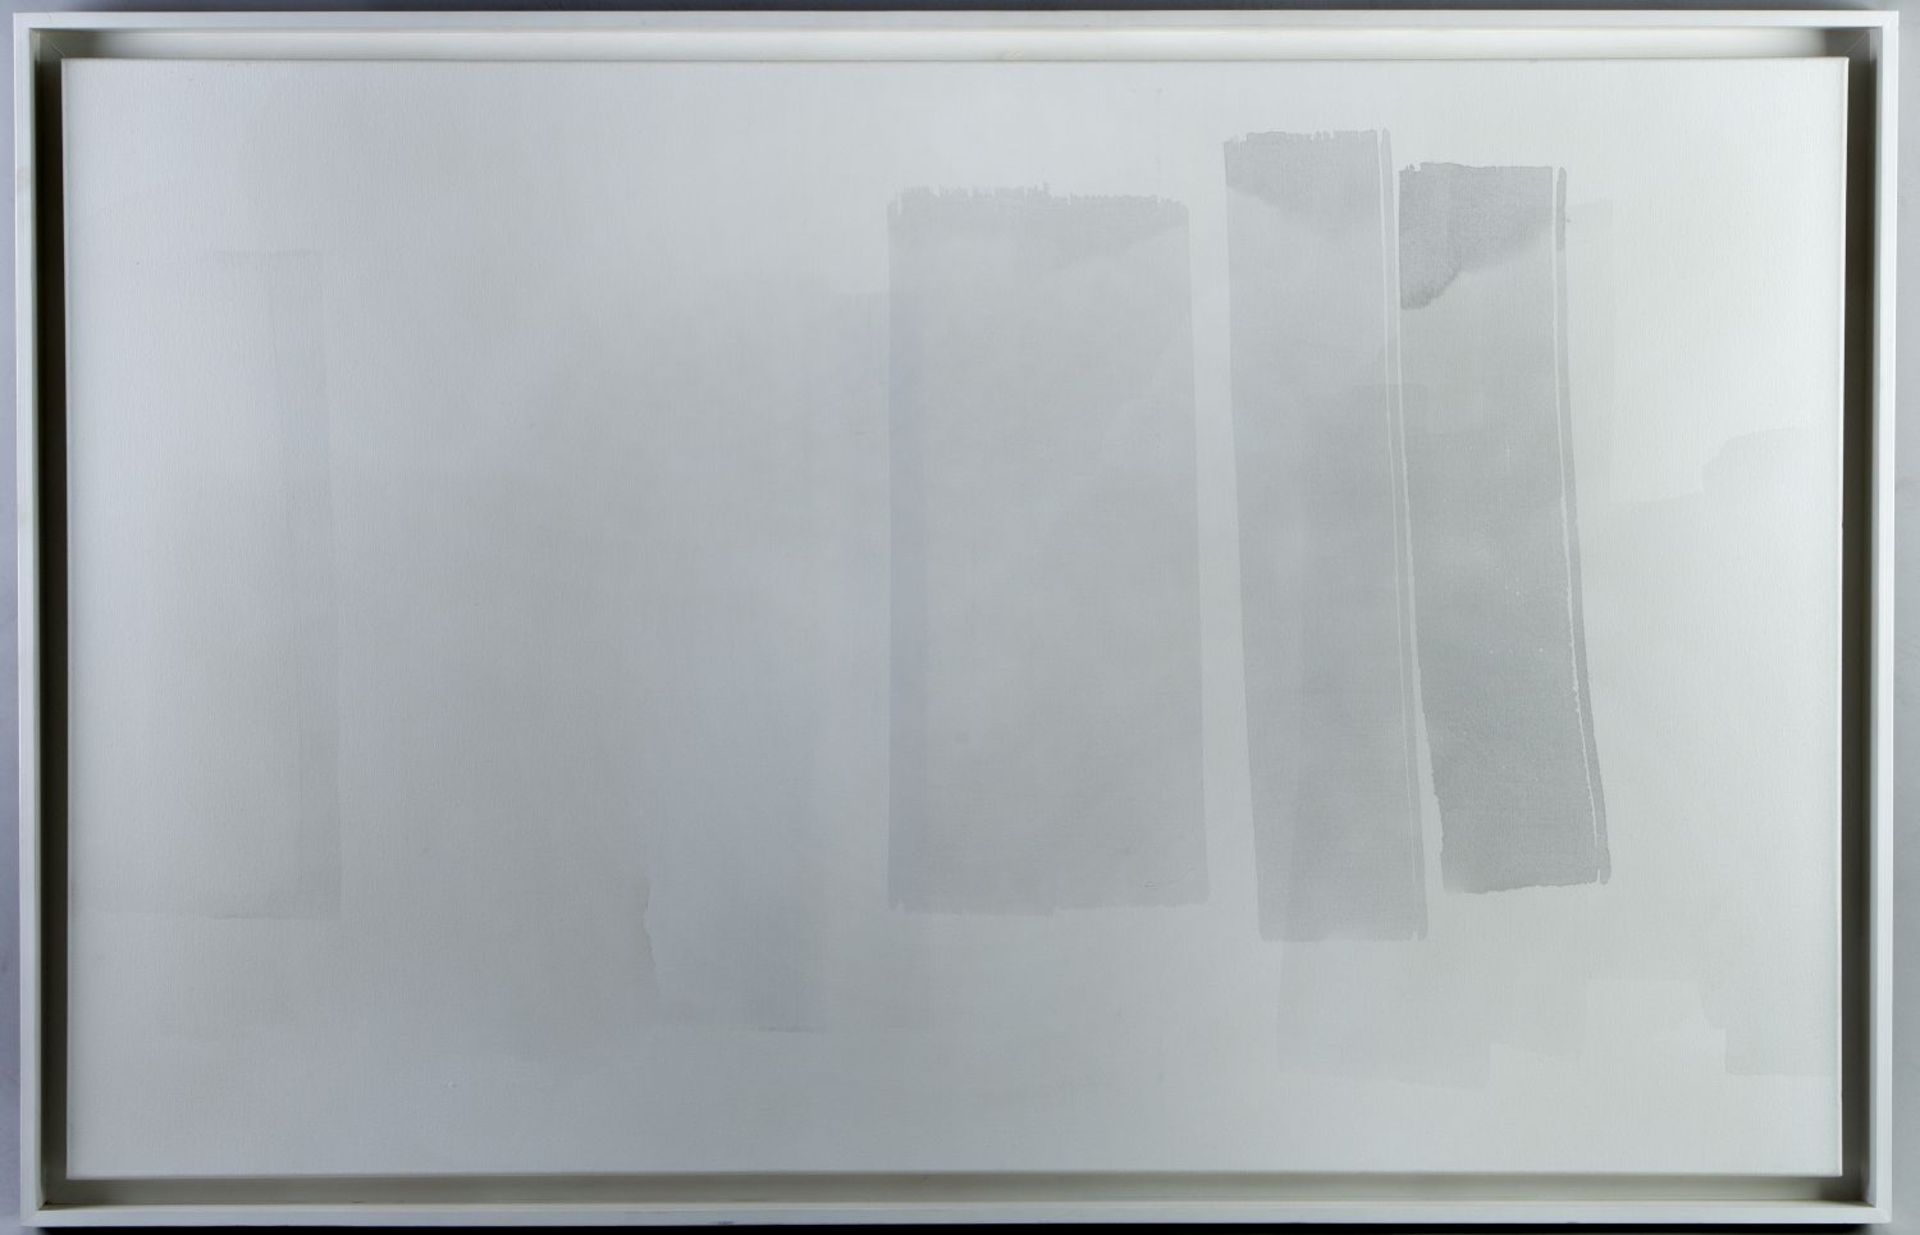 Dohr, Günther. 1936 Münster - Krefeld 2015Drei graue Balken auf Weiß. Acryl/Lwd. 100 x 160 cm.